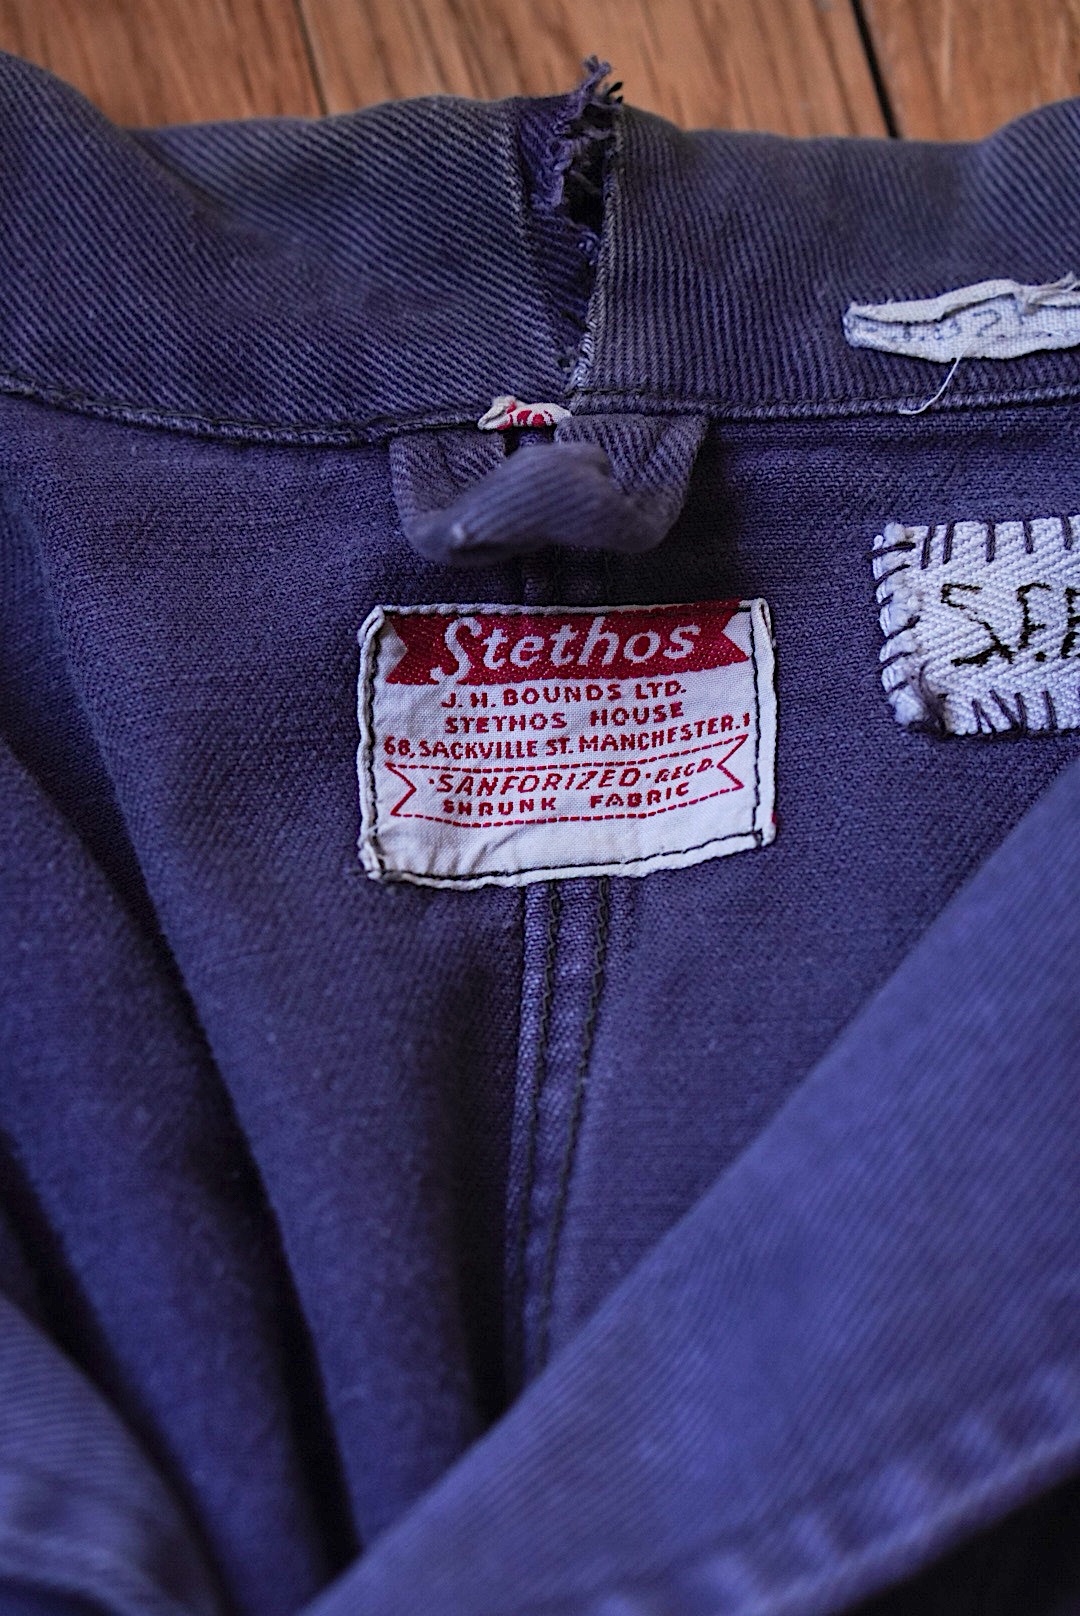 1950's British Work Jacket "Stethos"